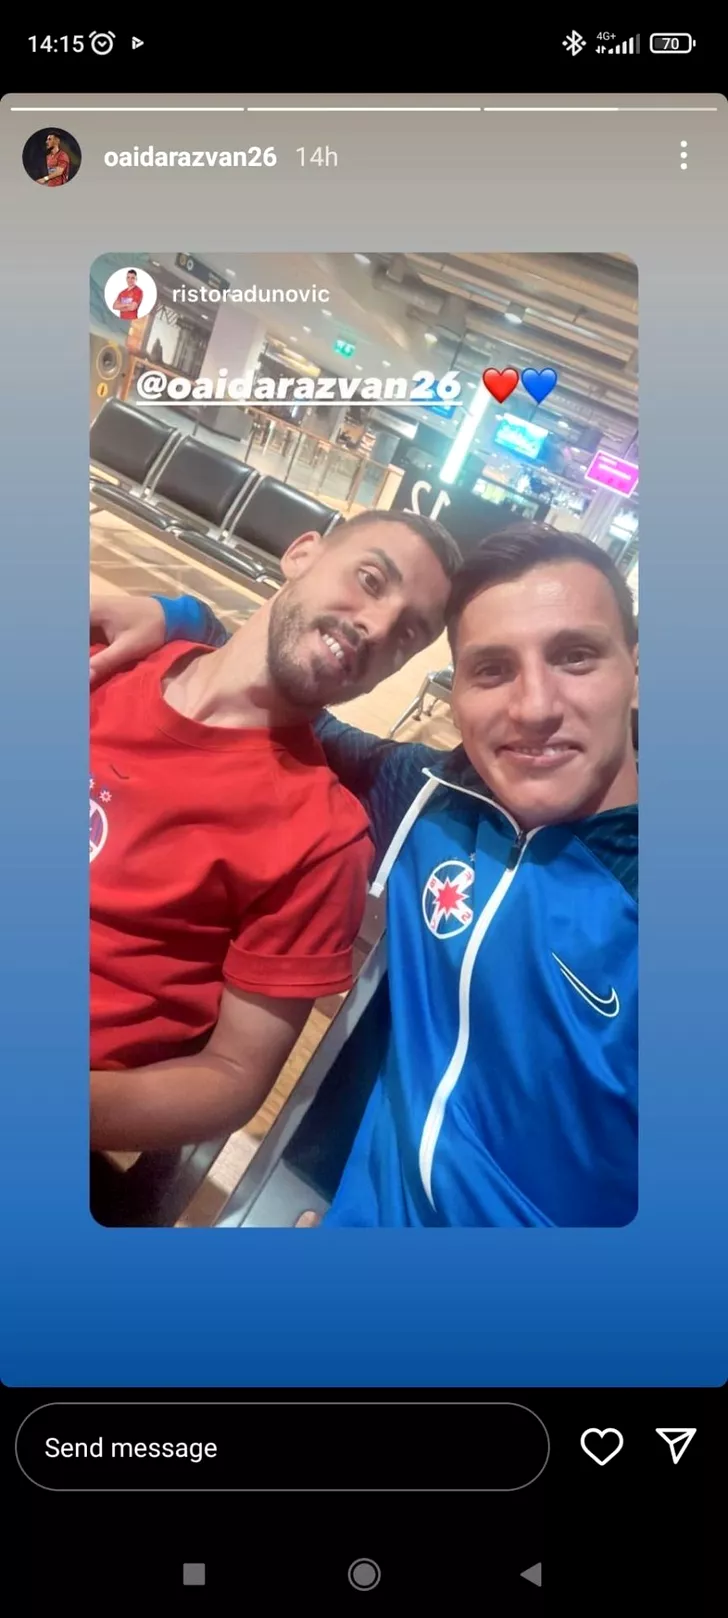 Risto Radunovic, selfie în aeroport cu Răzvan Oaidă